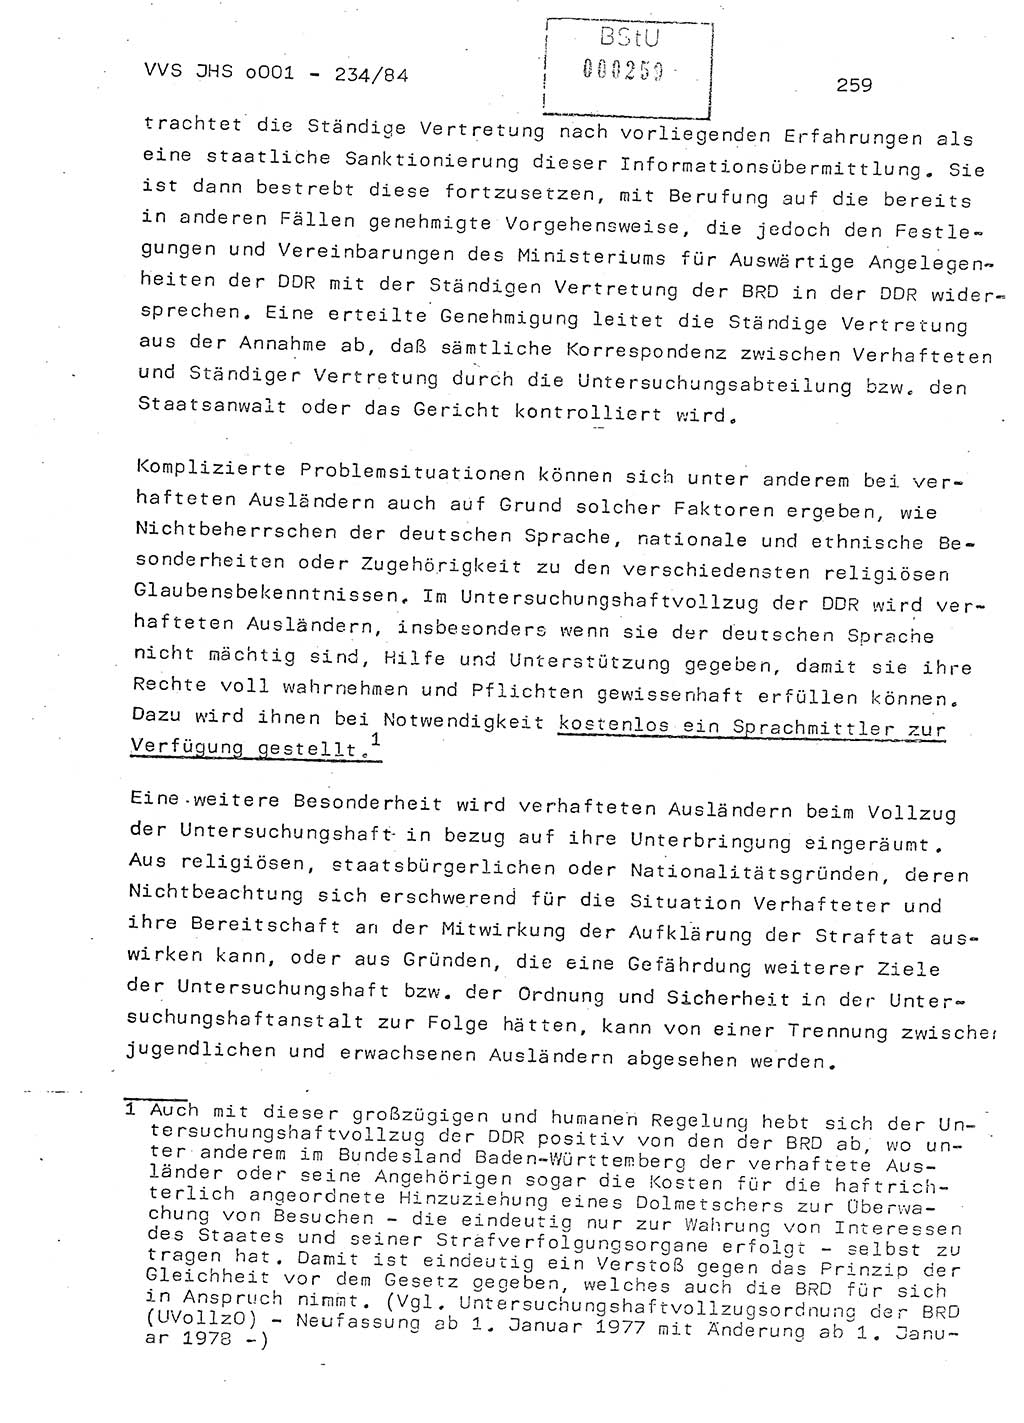 Dissertation Oberst Siegfried Rataizick (Abt. ⅩⅣ), Oberstleutnant Volkmar Heinz (Abt. ⅩⅣ), Oberstleutnant Werner Stein (HA Ⅸ), Hauptmann Heinz Conrad (JHS), Ministerium für Staatssicherheit (MfS) [Deutsche Demokratische Republik (DDR)], Juristische Hochschule (JHS), Vertrauliche Verschlußsache (VVS) o001-234/84, Potsdam 1984, Seite 259 (Diss. MfS DDR JHS VVS o001-234/84 1984, S. 259)